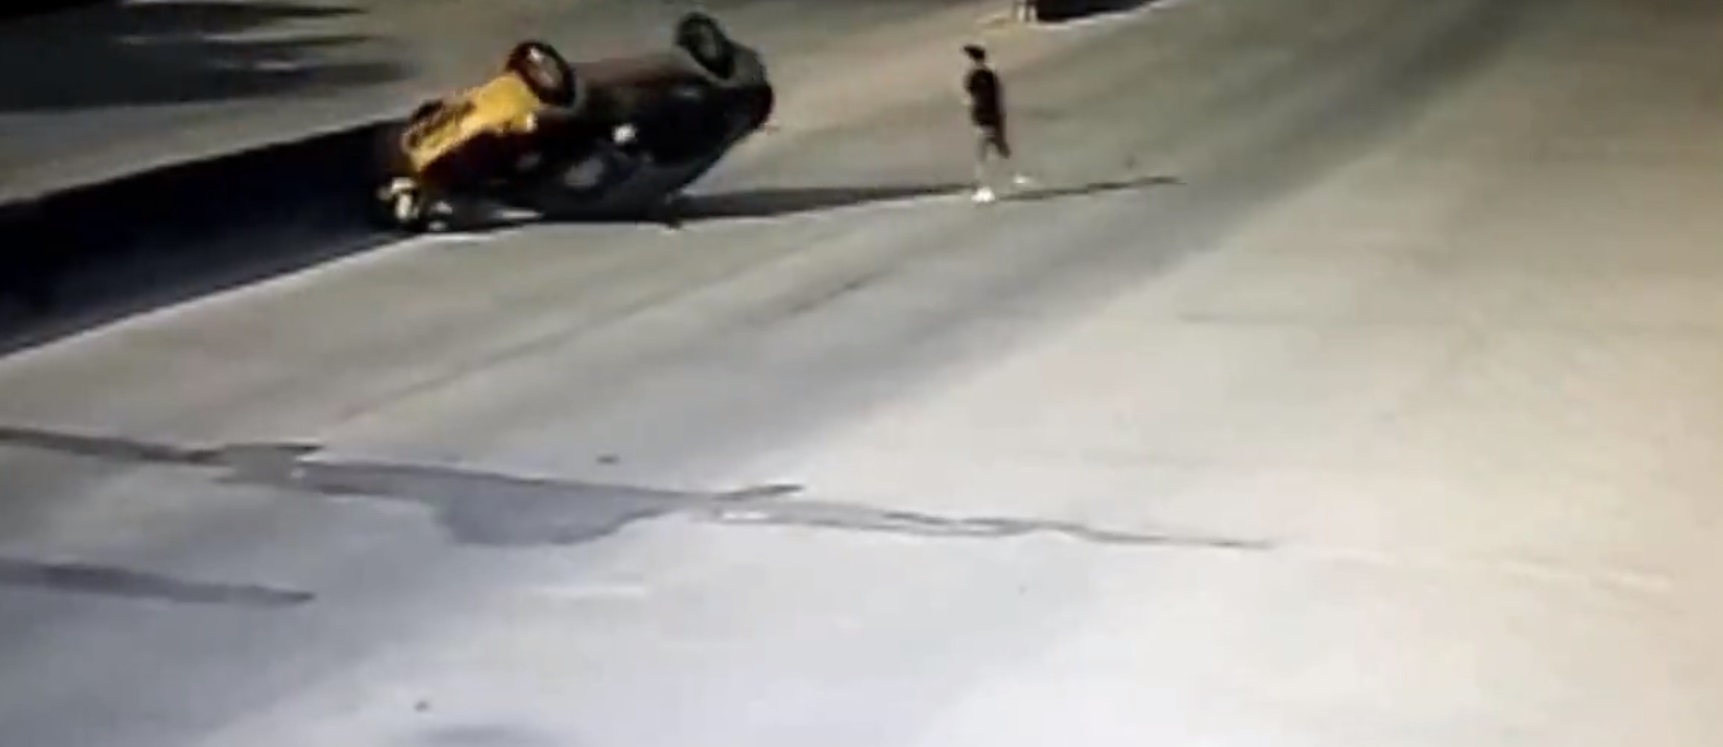 Τα αντανακλαστικά του έσωσαν τη ζωή – Όχημα ανατράπηκε και έλιωσε  διερχόμενη μοτοσικλέτα - VIDEO